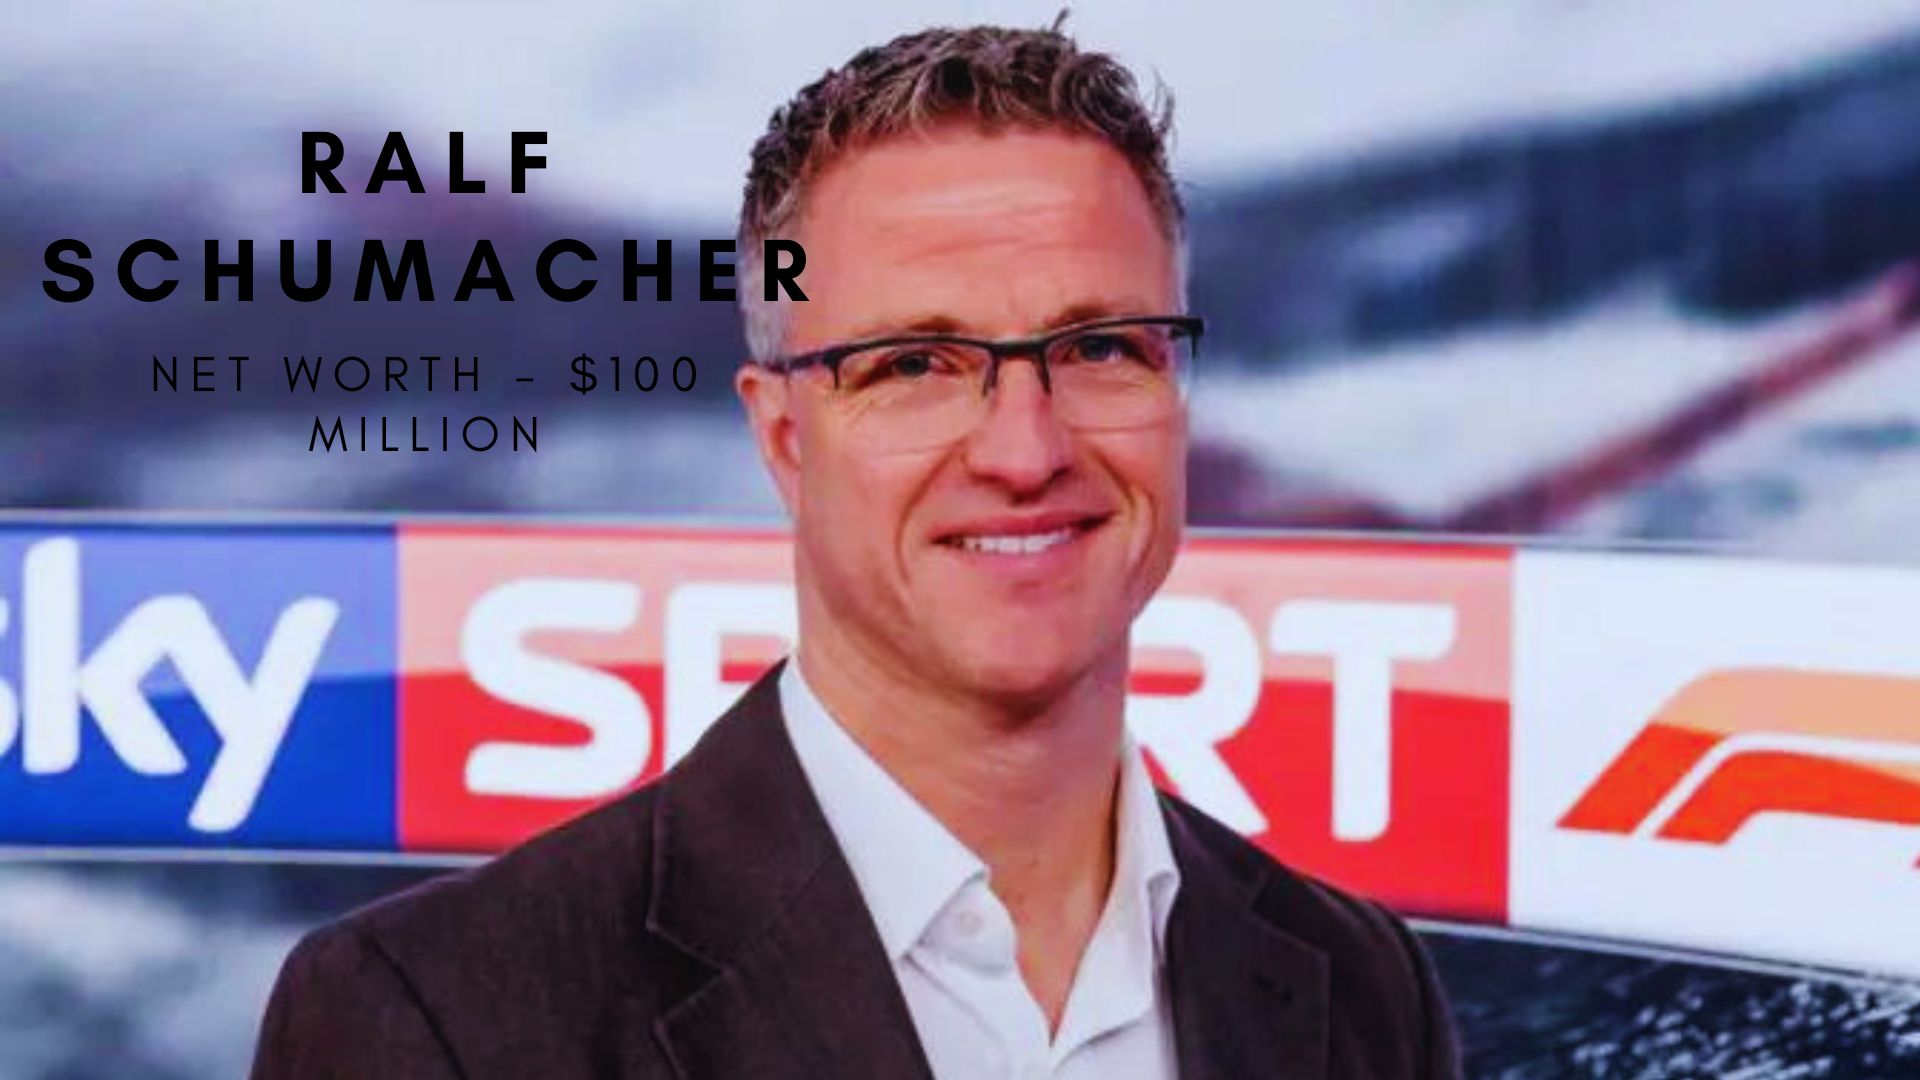 Ralf Schumacher net worth